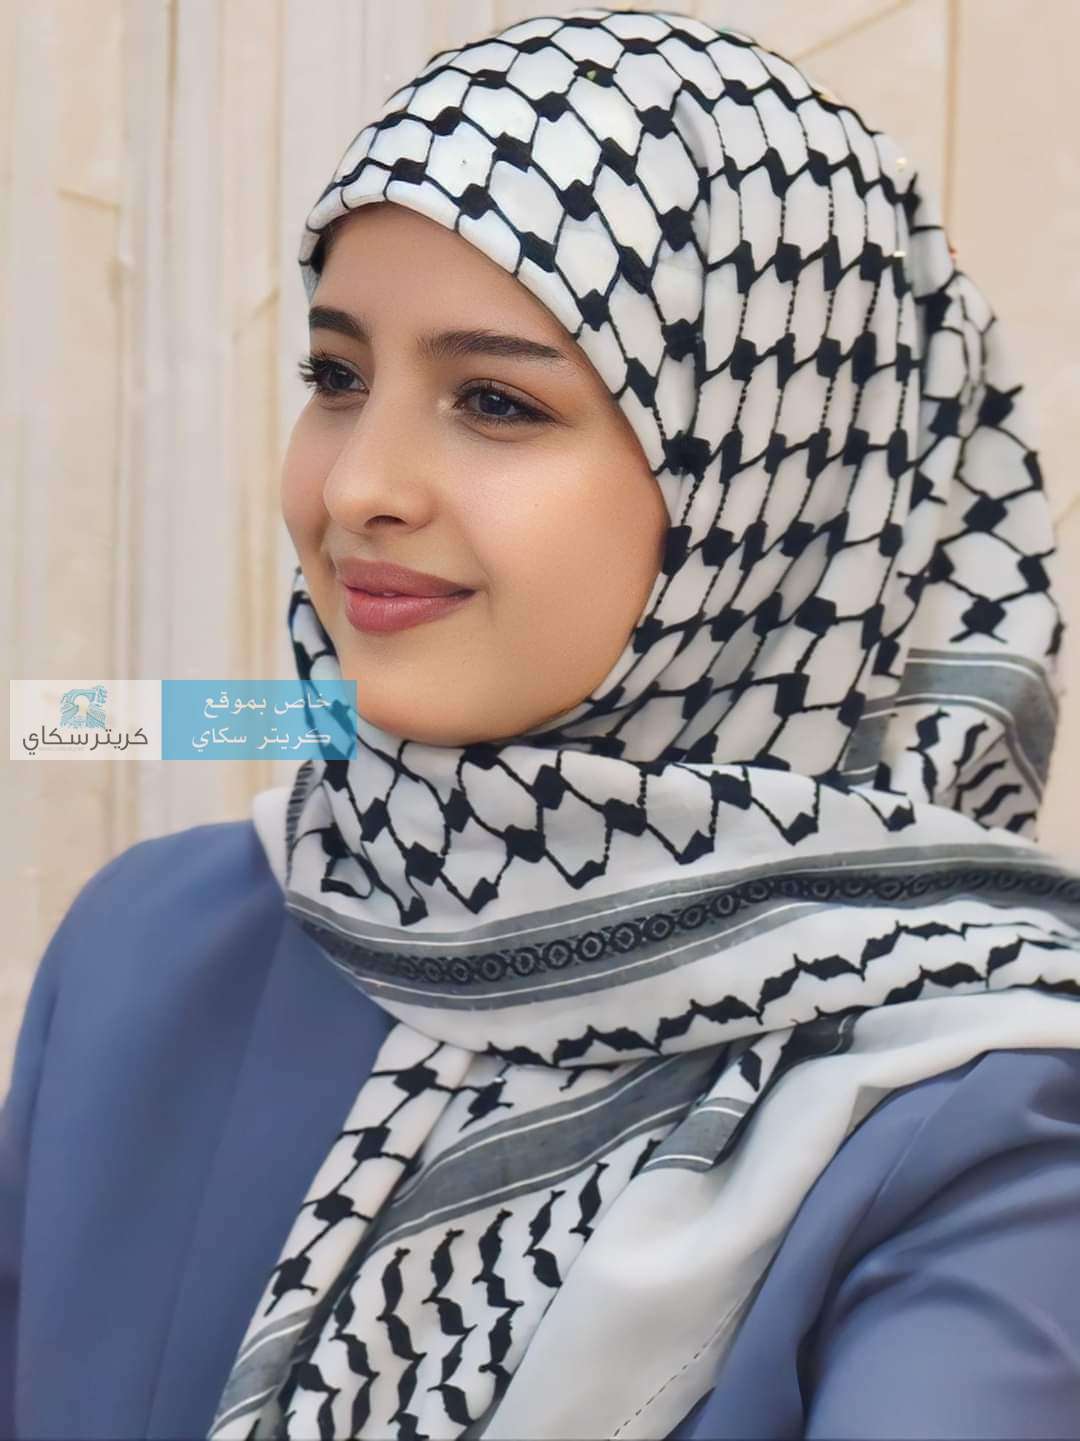 بالفيديو الفنانة الشهيرة ماريا قحطان تعلن ارتدائها هذا الامر لاول مرة بحياتها في صنعاء وتكشف عن السبب